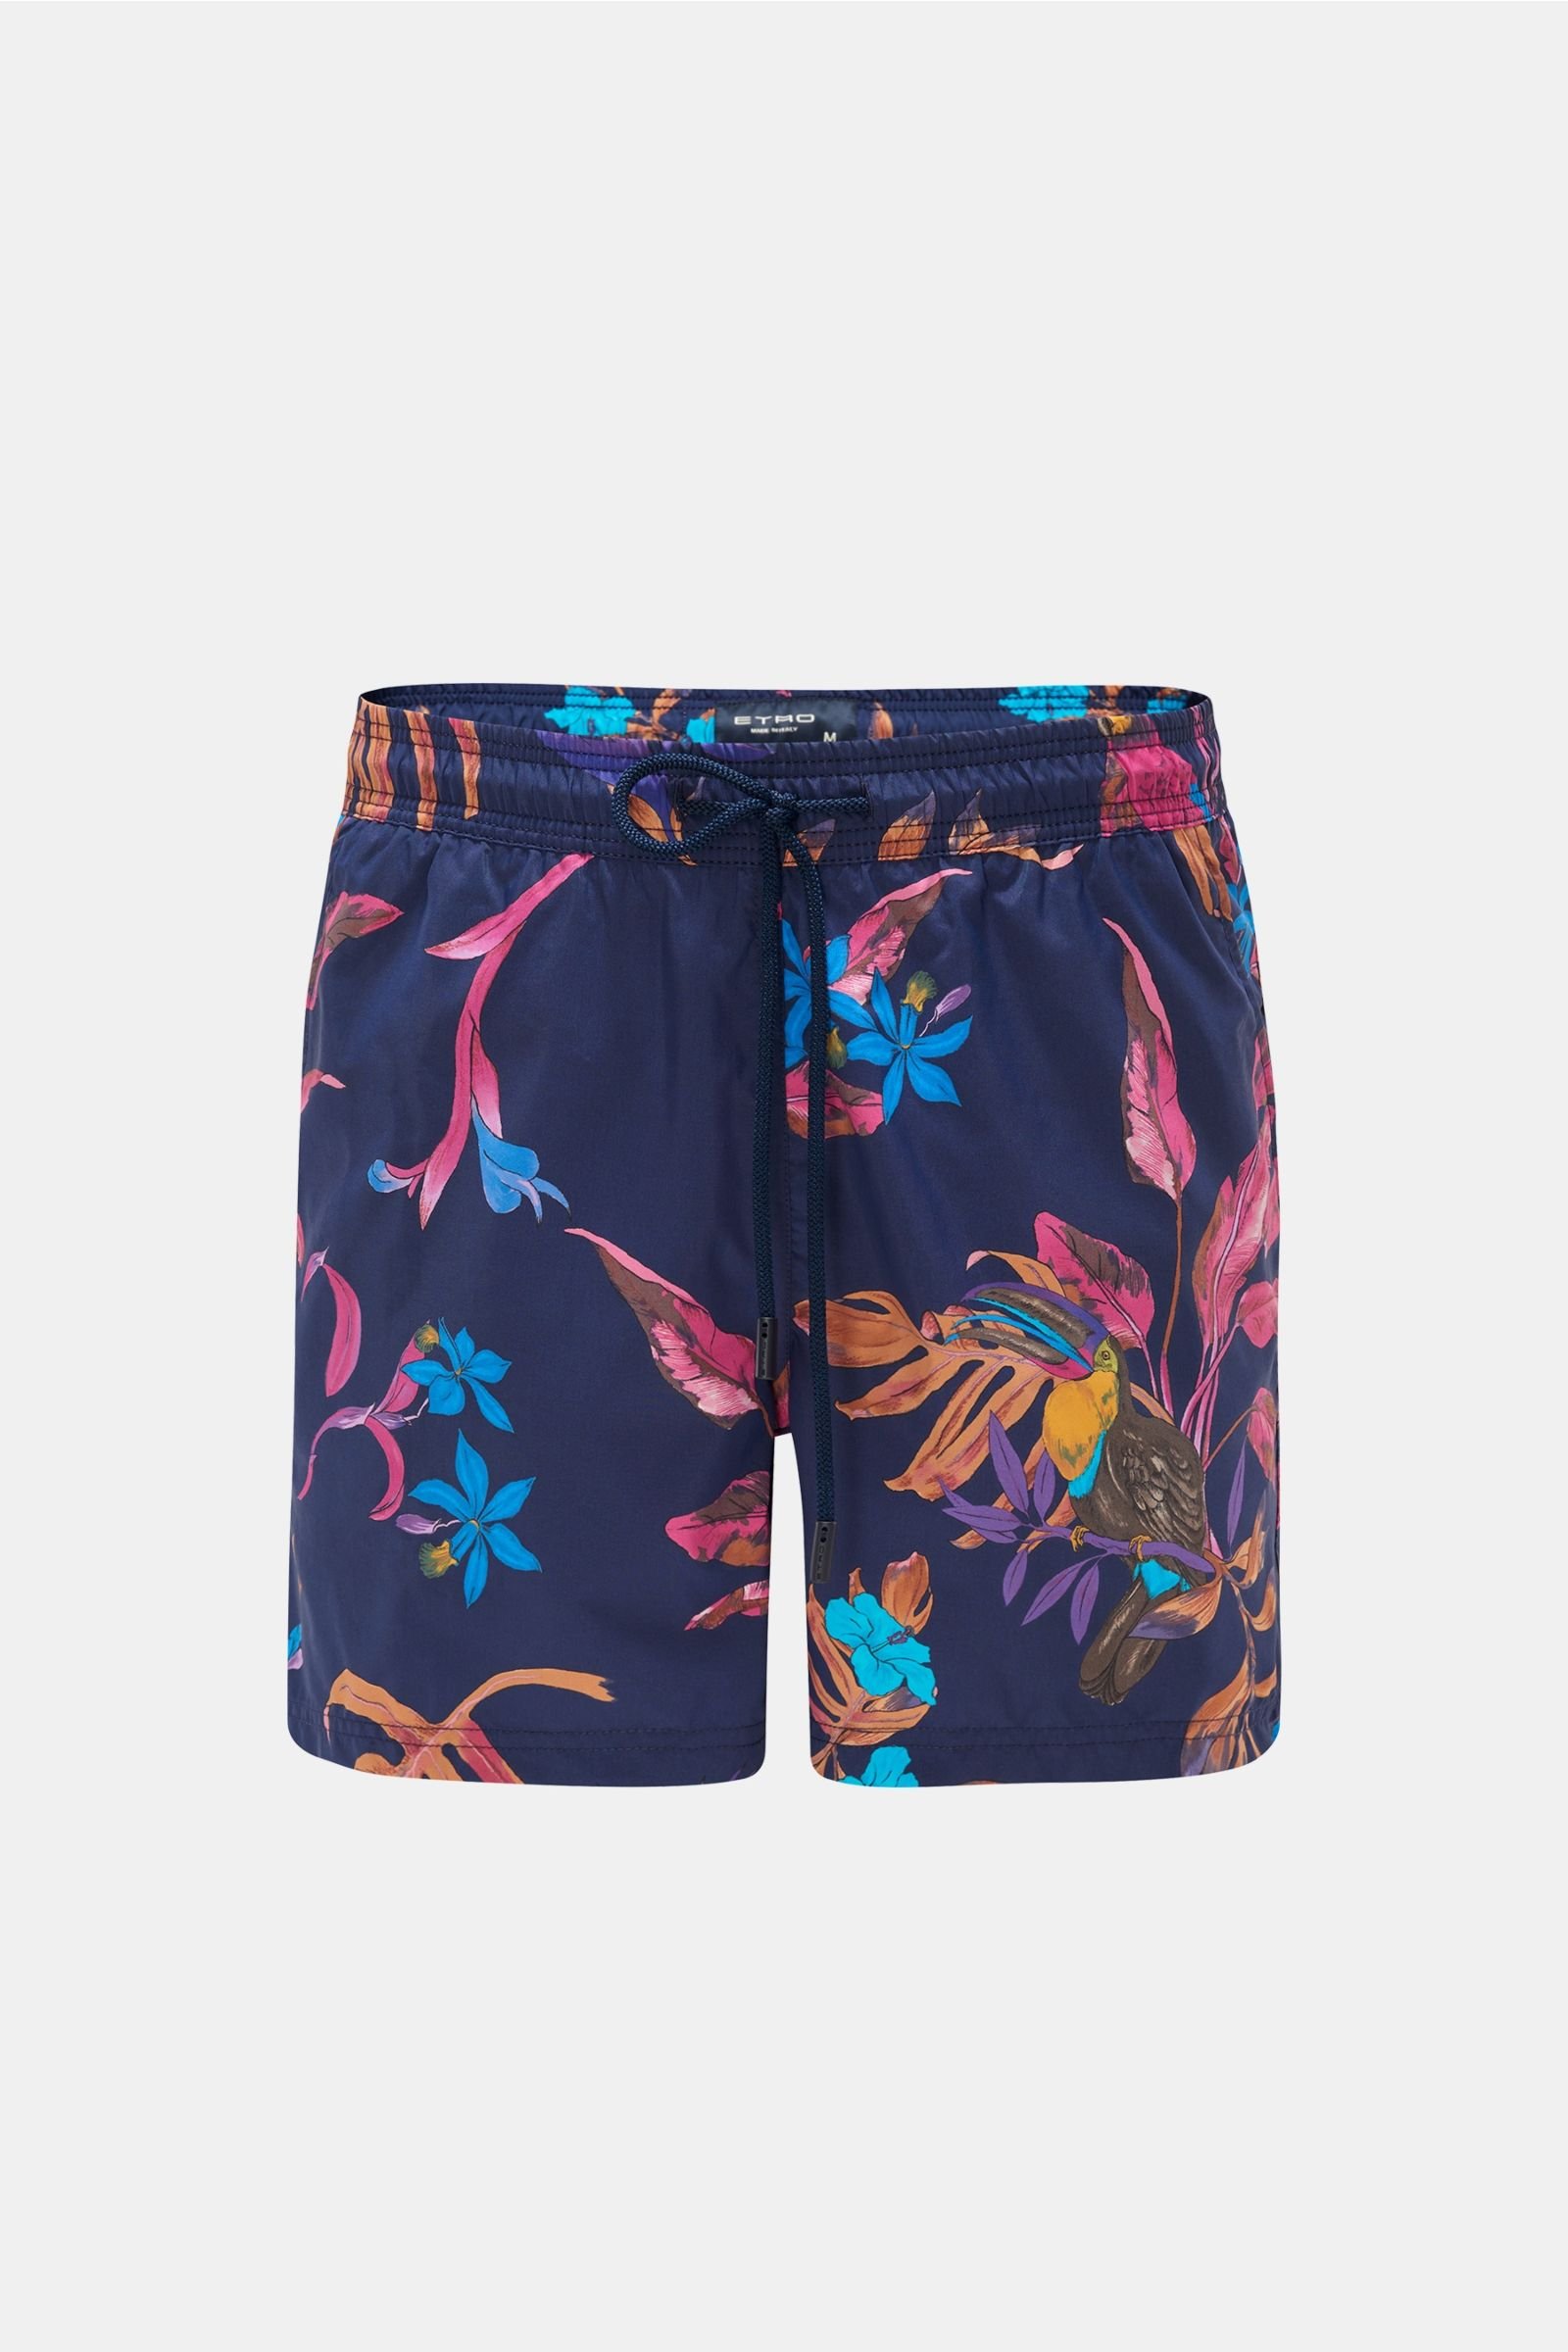 Swim shorts navy/magenta patterned